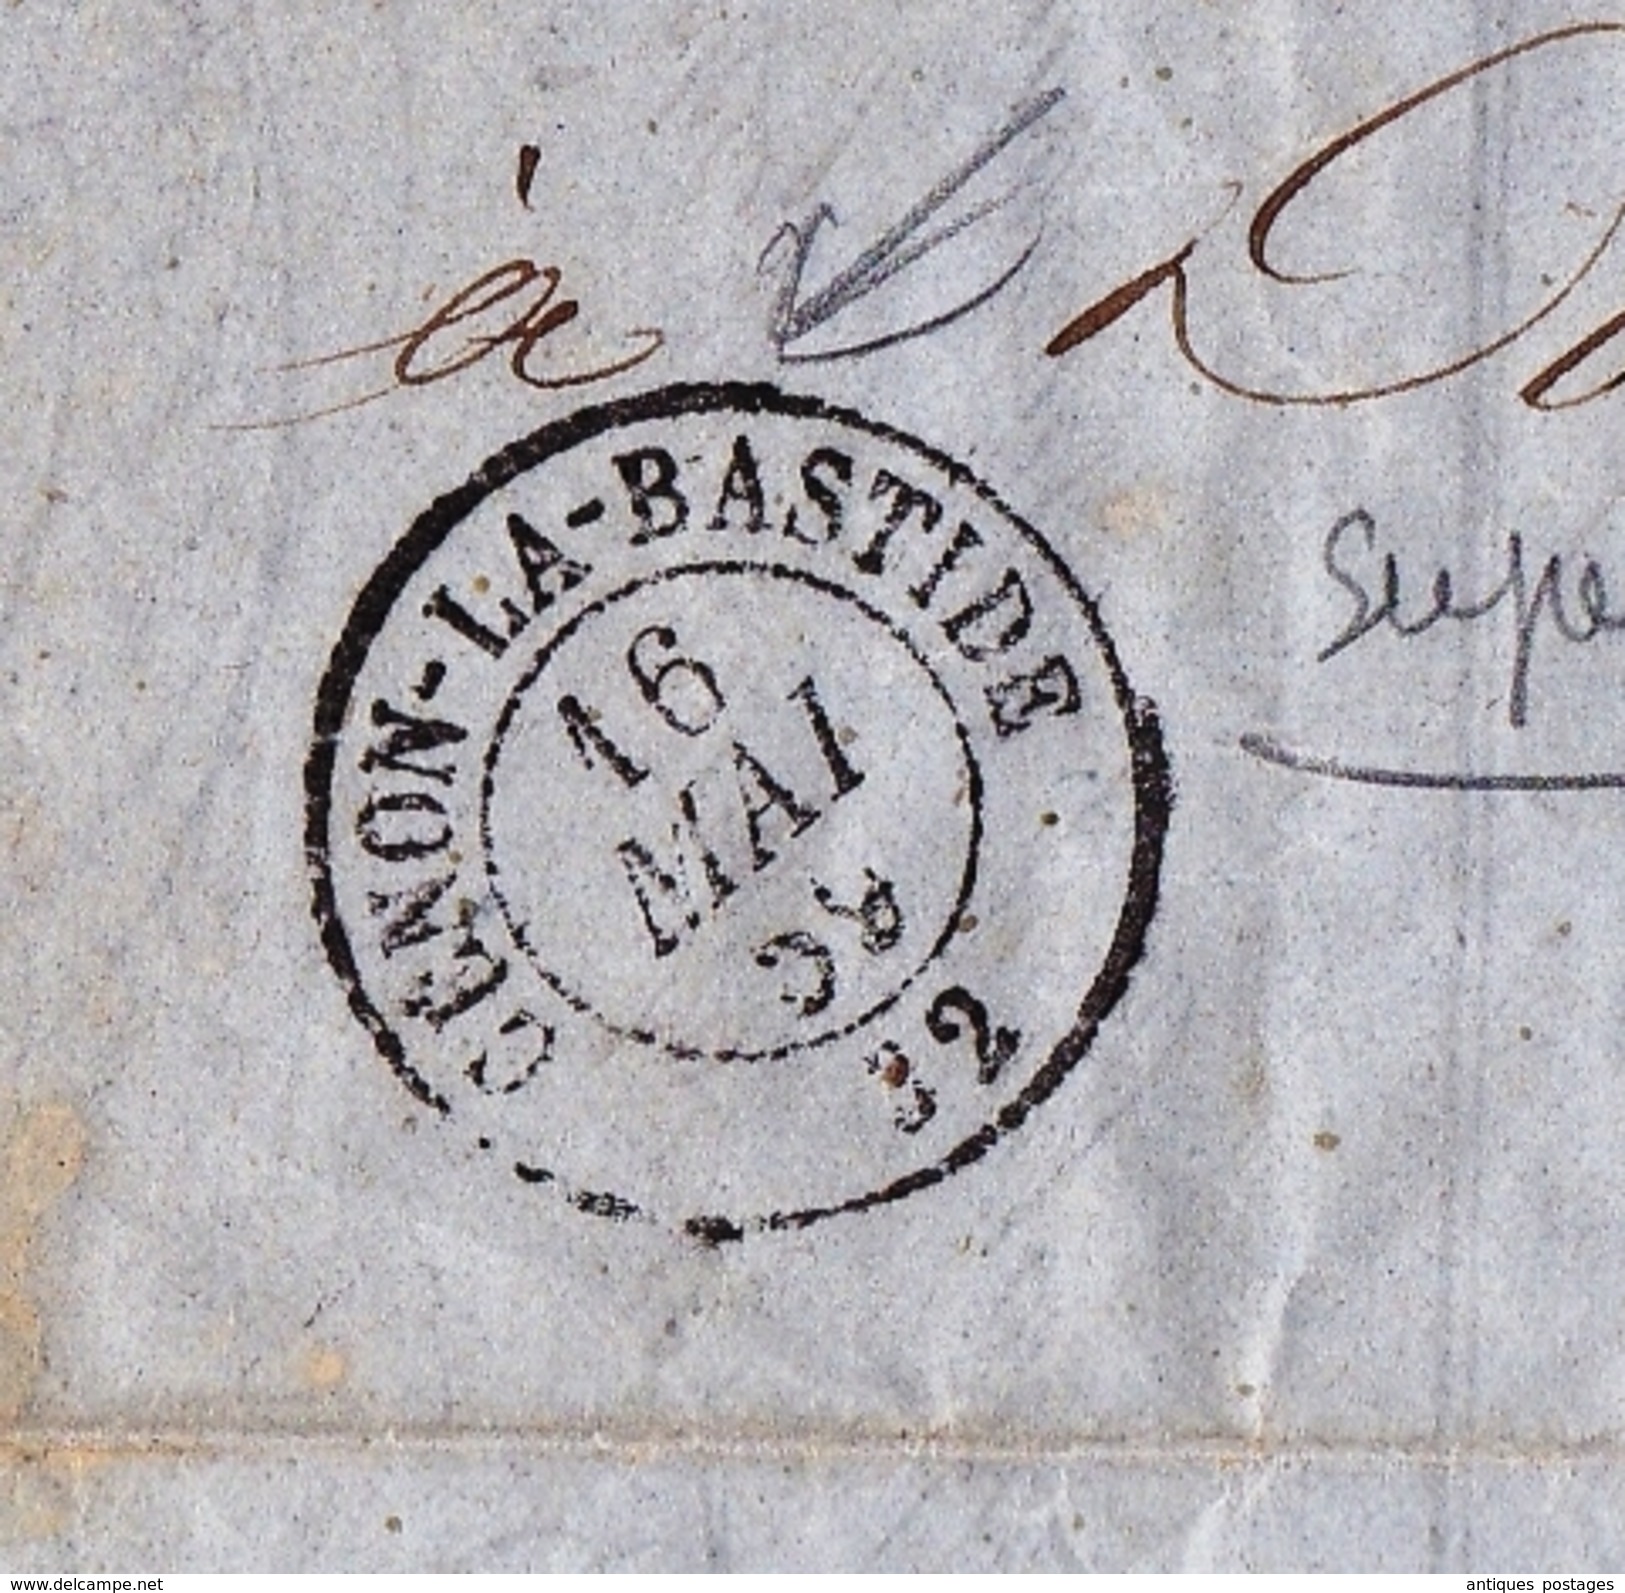 Lettre 1859 THOUMIN Vin Eau de Vie Rhum Anisette La Bastide de Bordeaux Gironde Cénon la Bastide